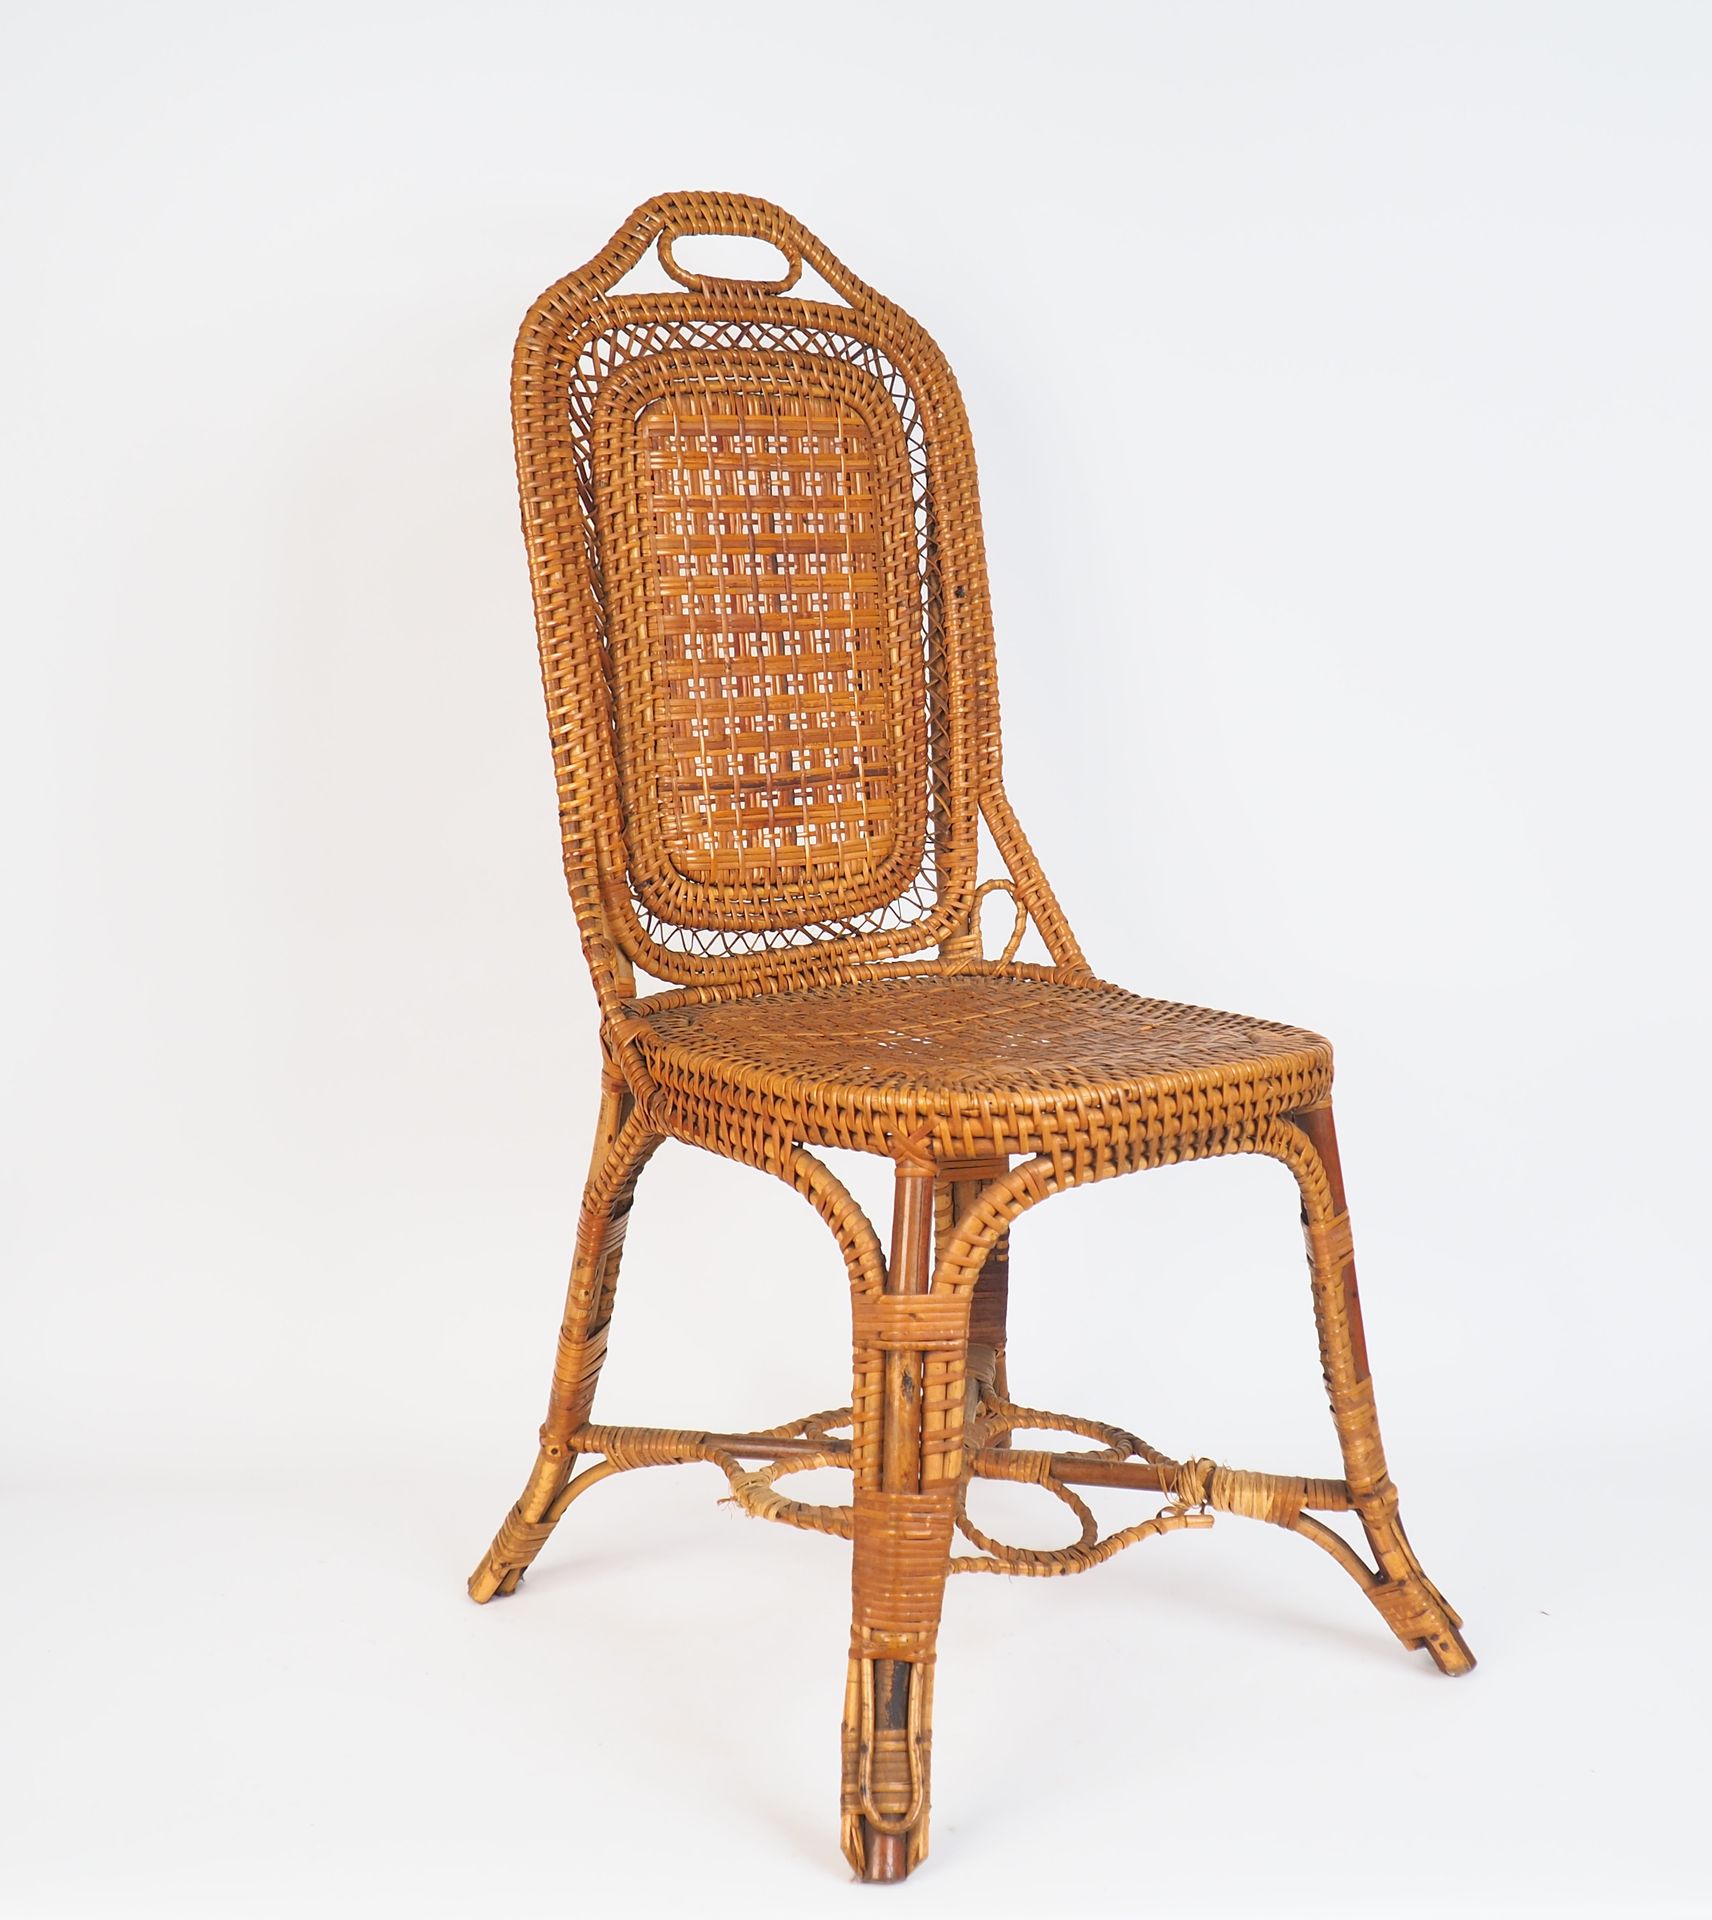 Null 三套拿破仑三世的藤椅
在金属板上签名的是A.在巴黎的PERRET